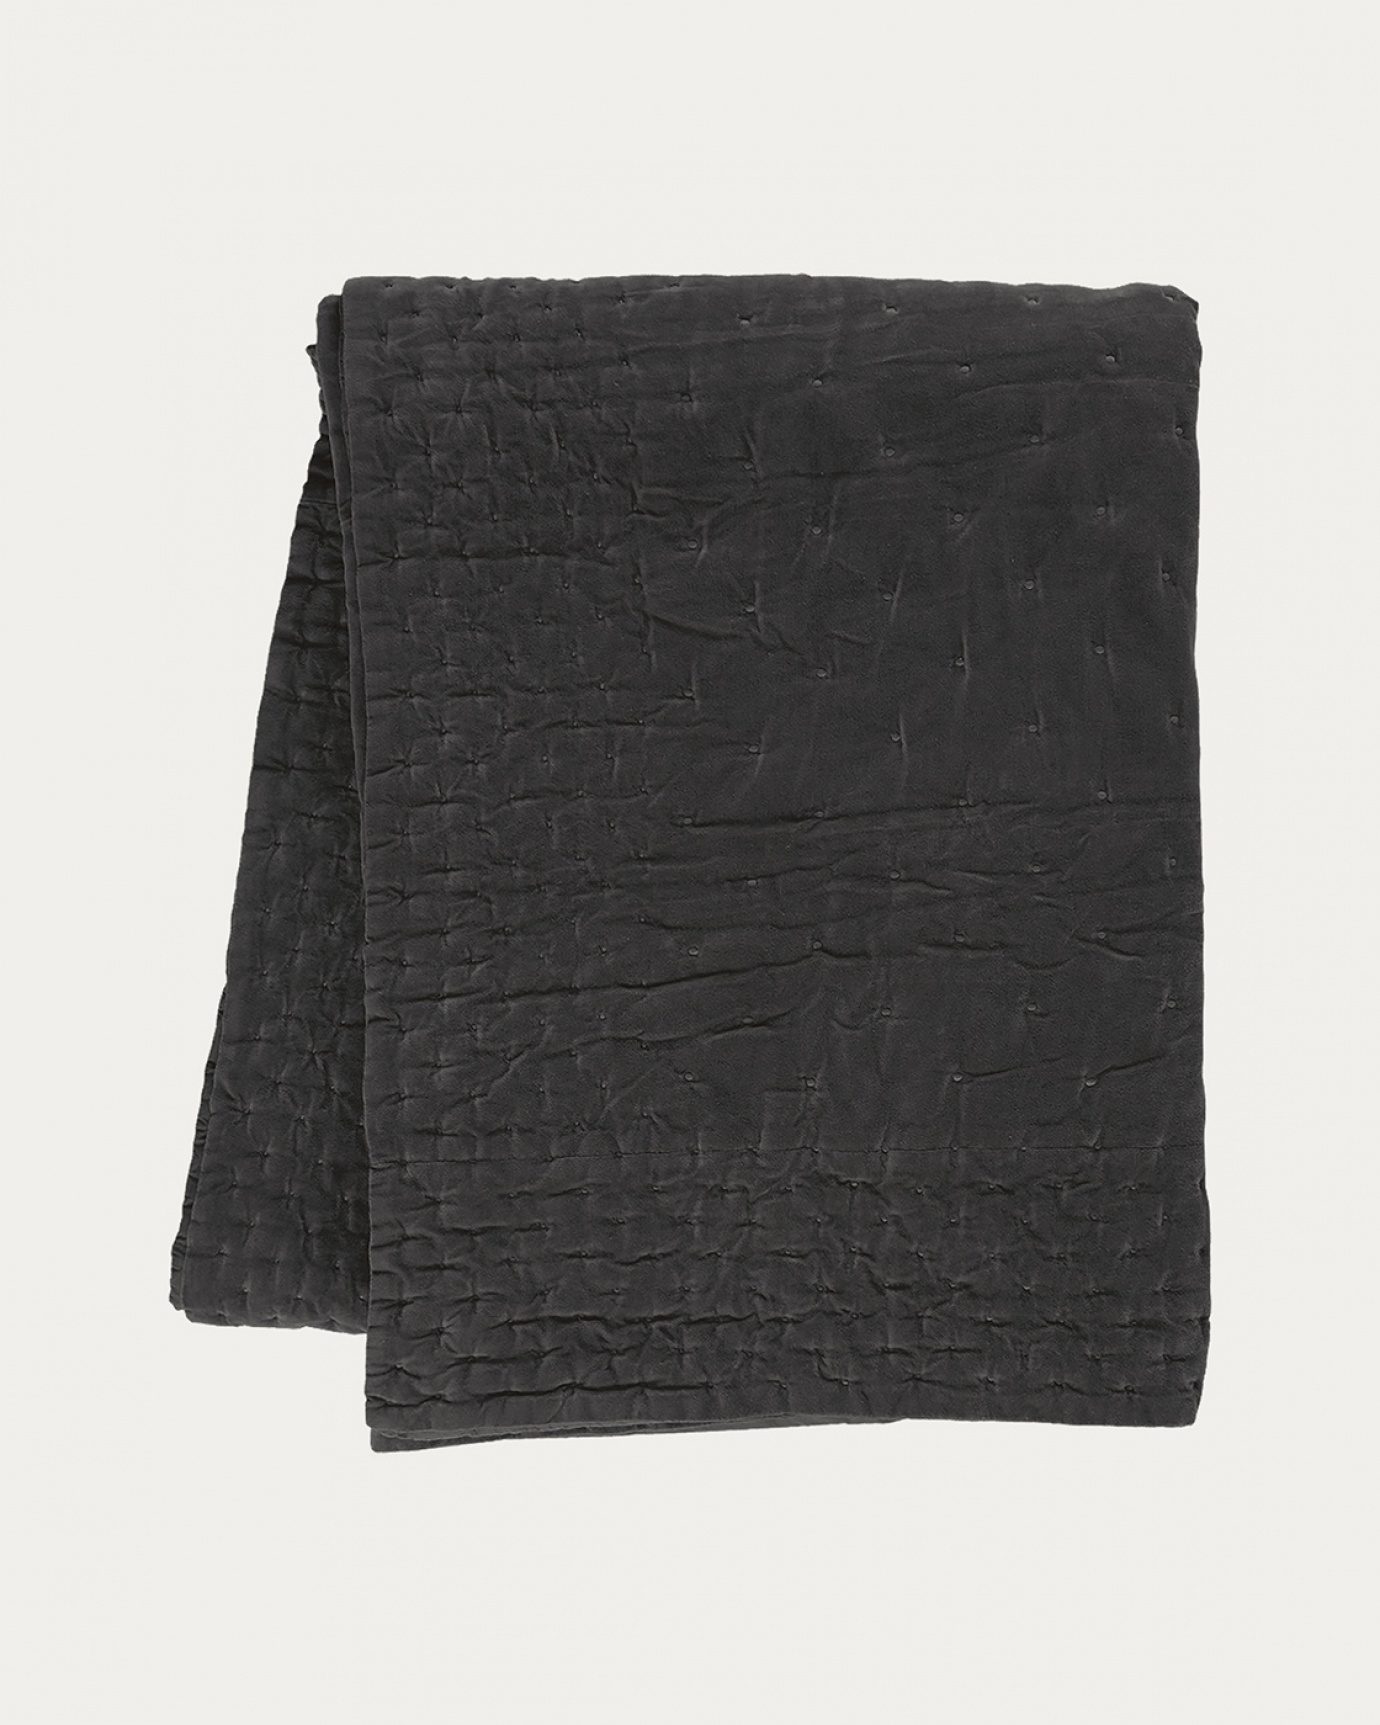 Produktbild dunkles anthrazitgrau Tagesdecke PAOLO aus weichem Baumwollsamt für Doppelbett von LINUM DESIGN. Größe 270x260 cm.